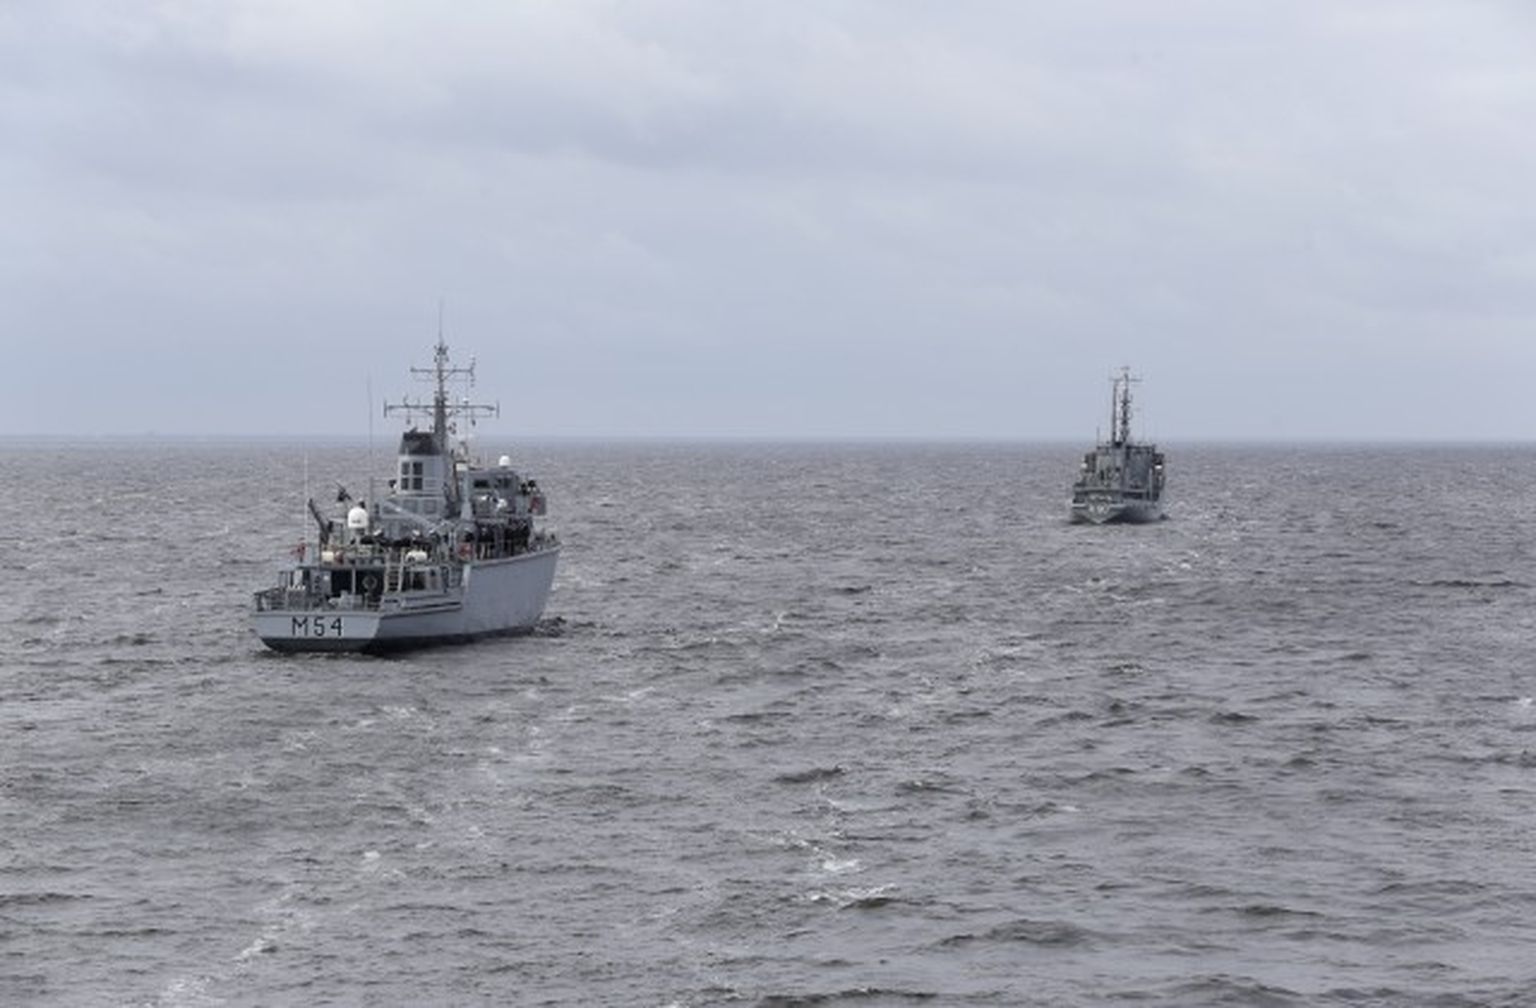 Lietuvas Jūras spēku mīnu kuģis M-54 "Kuršis" un Baltijas valstu jūras eskadras (BALTRON) sastāvā esošais Jūras spēku flotiles apgādes kuģis A-90 "Varonis", atzīmējot Jūras spēku atjaunošanas 25.gadadienu, piedalās kuģu parādē Rīgas jūras līcī